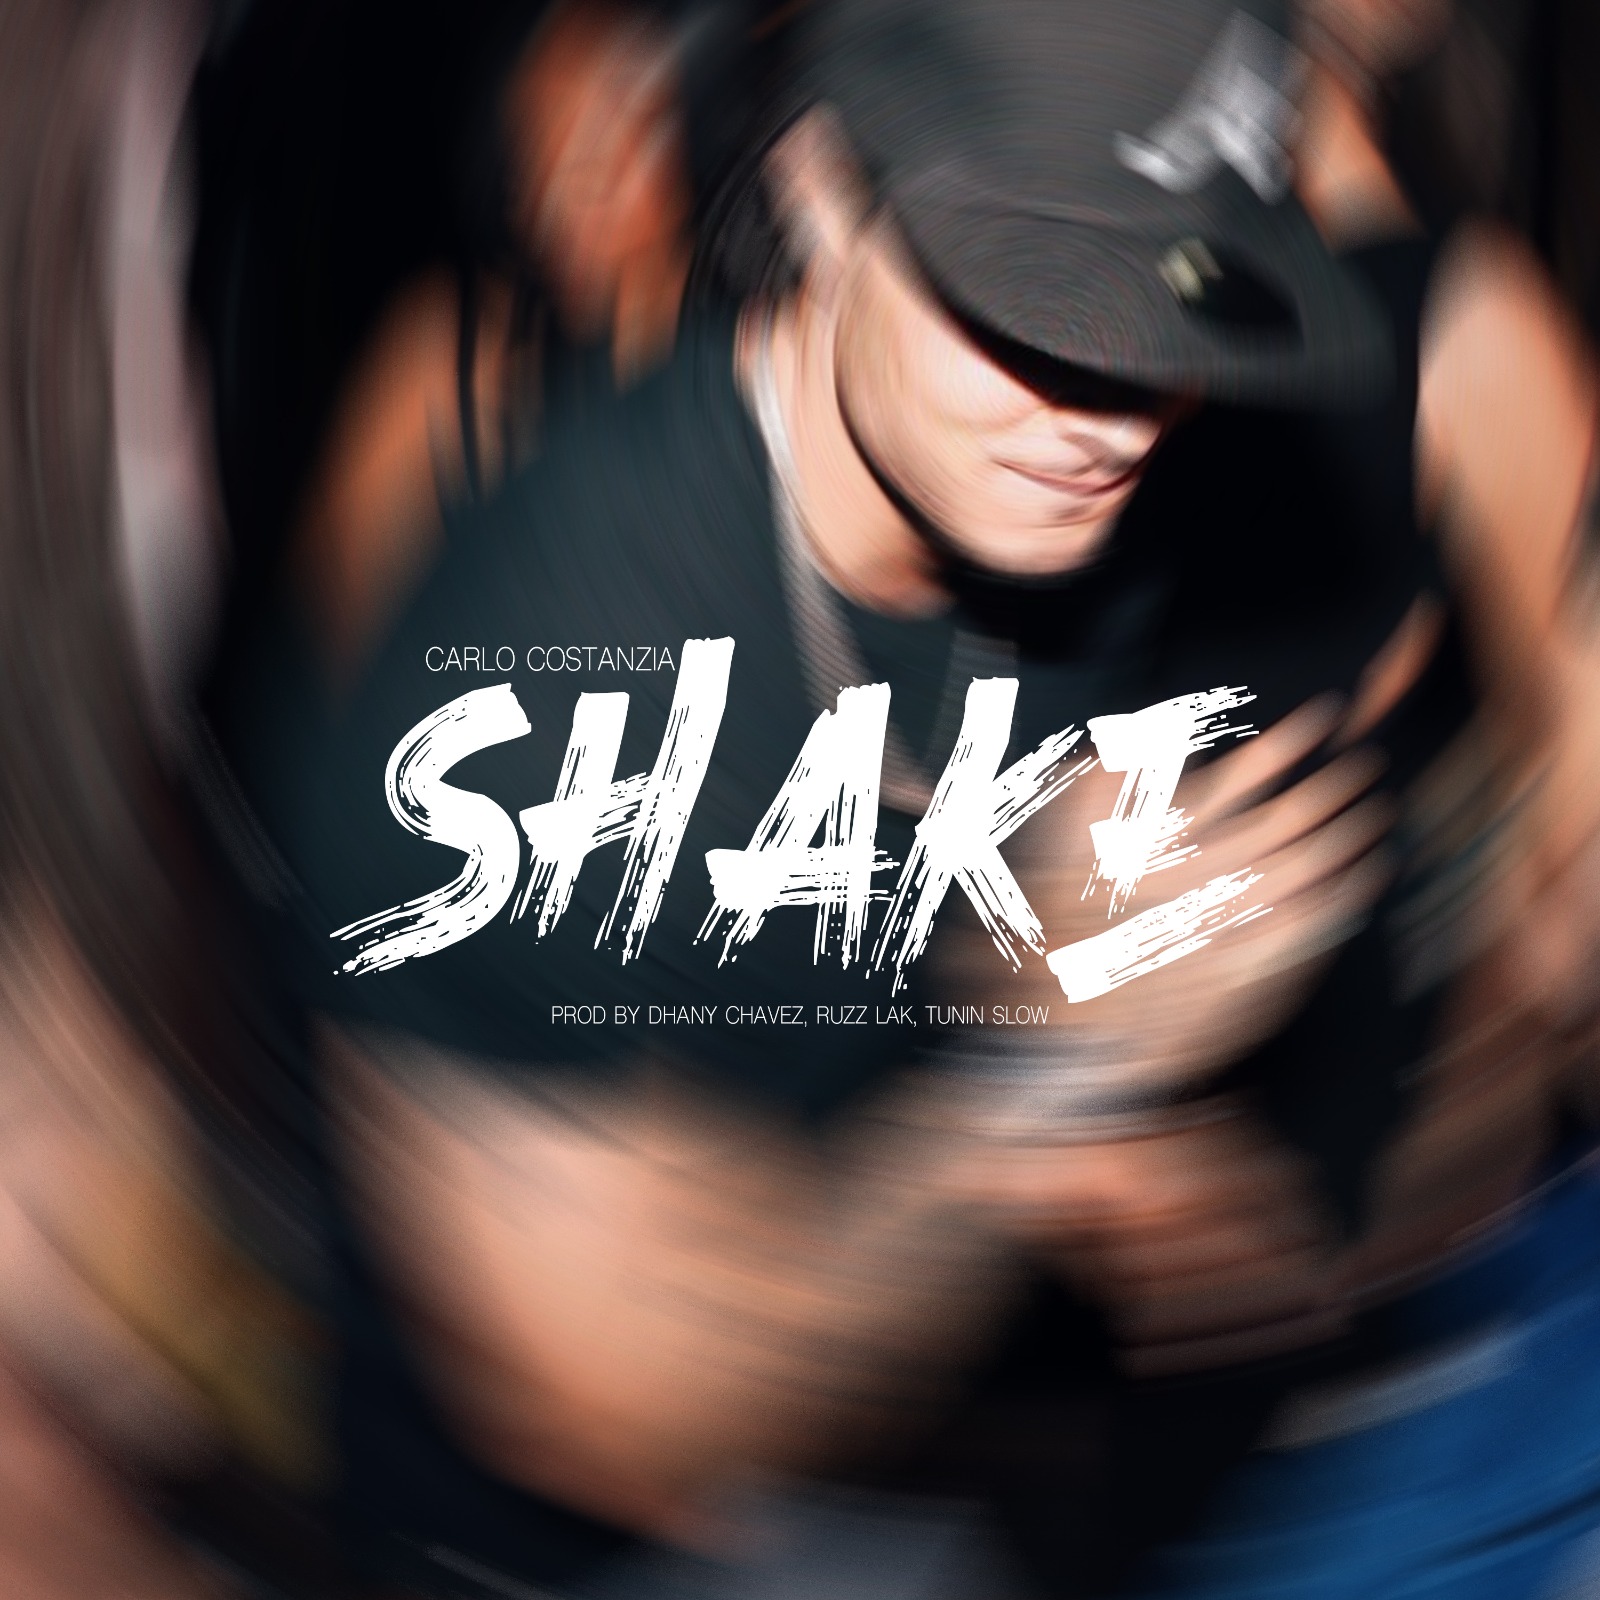 Carlo Costanzia habla de “Shake”, su single con Dhany Chavez